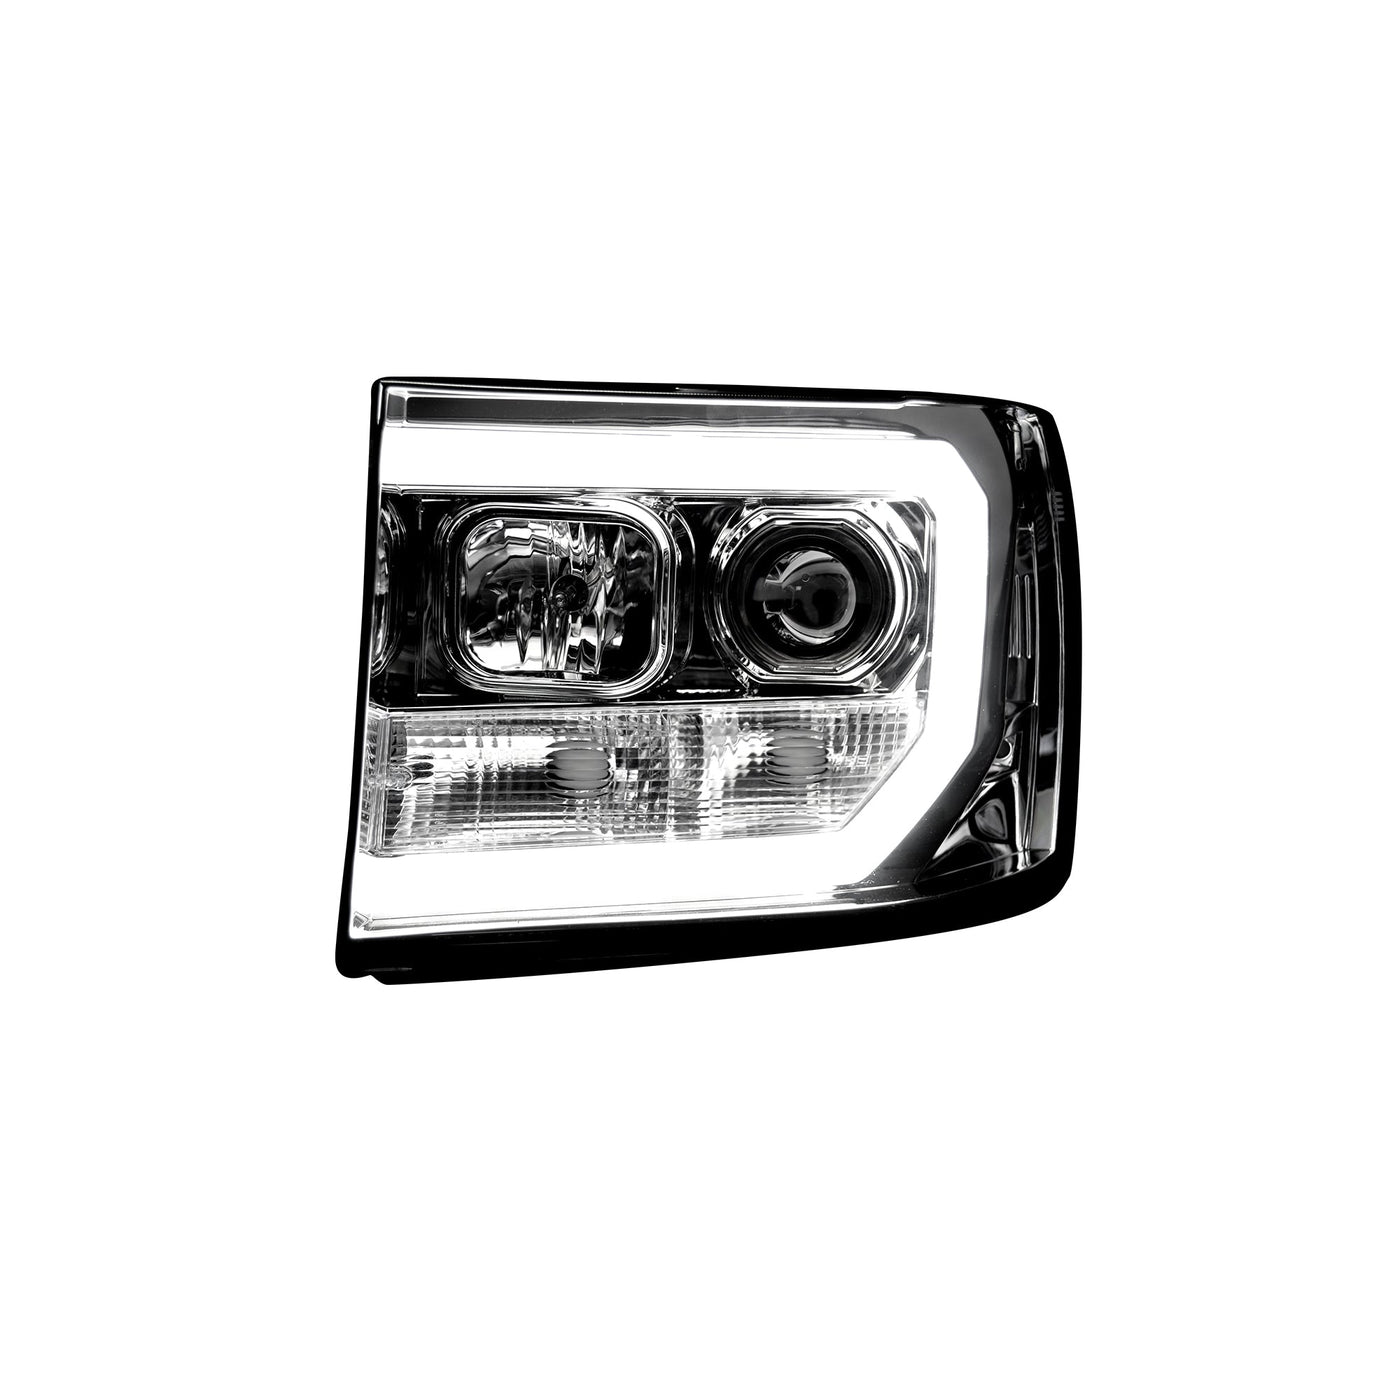 GMC Projector Headlights, Sierra Headlights, Clear/Chrome Headlights, Sierra 07-13 Headlights, Recon Projector Headlights